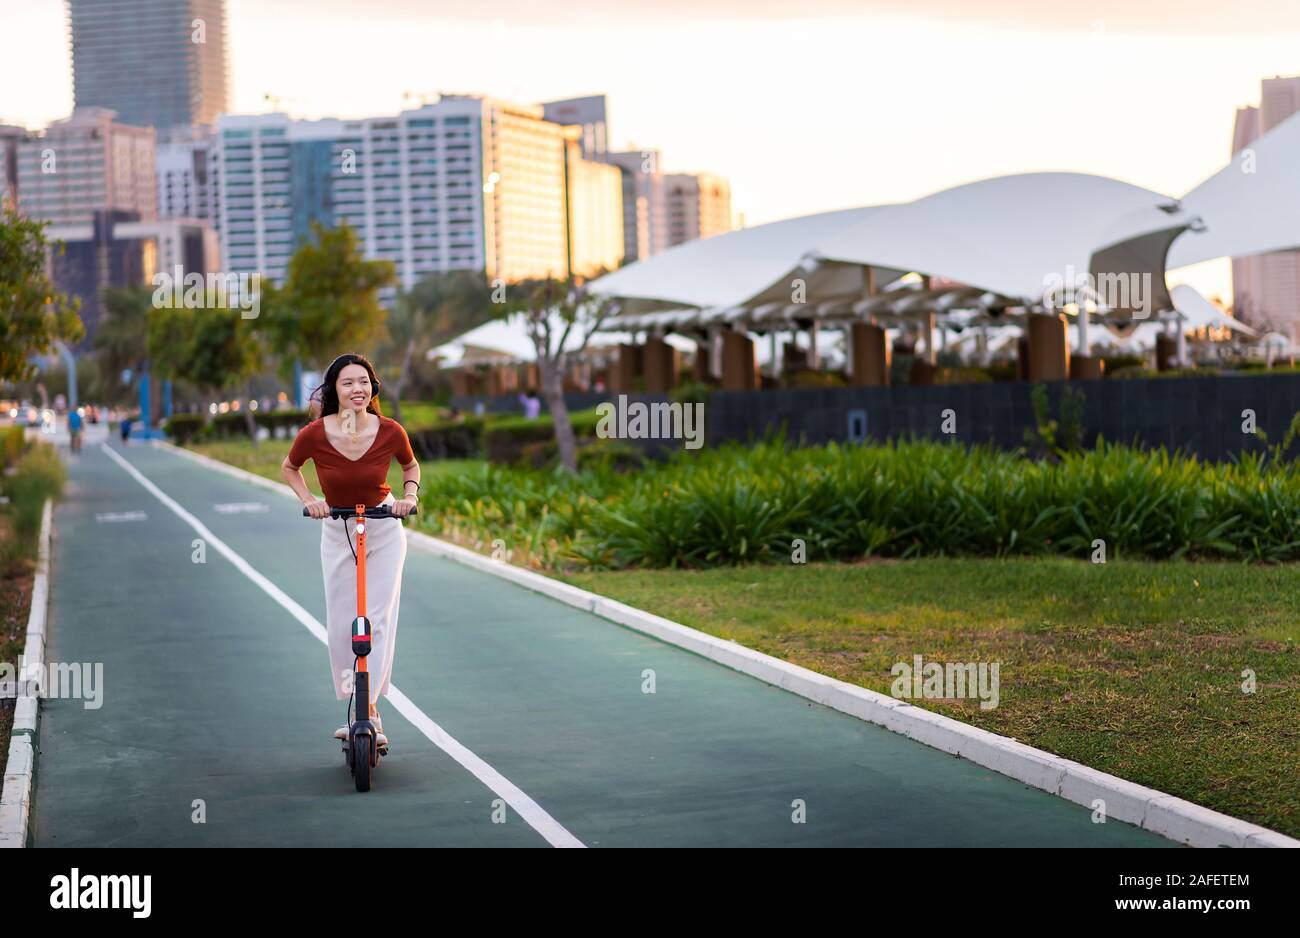 Frau reiten Elektroroller für den Transport in einer modernen Stadt Umgebung Stockfoto